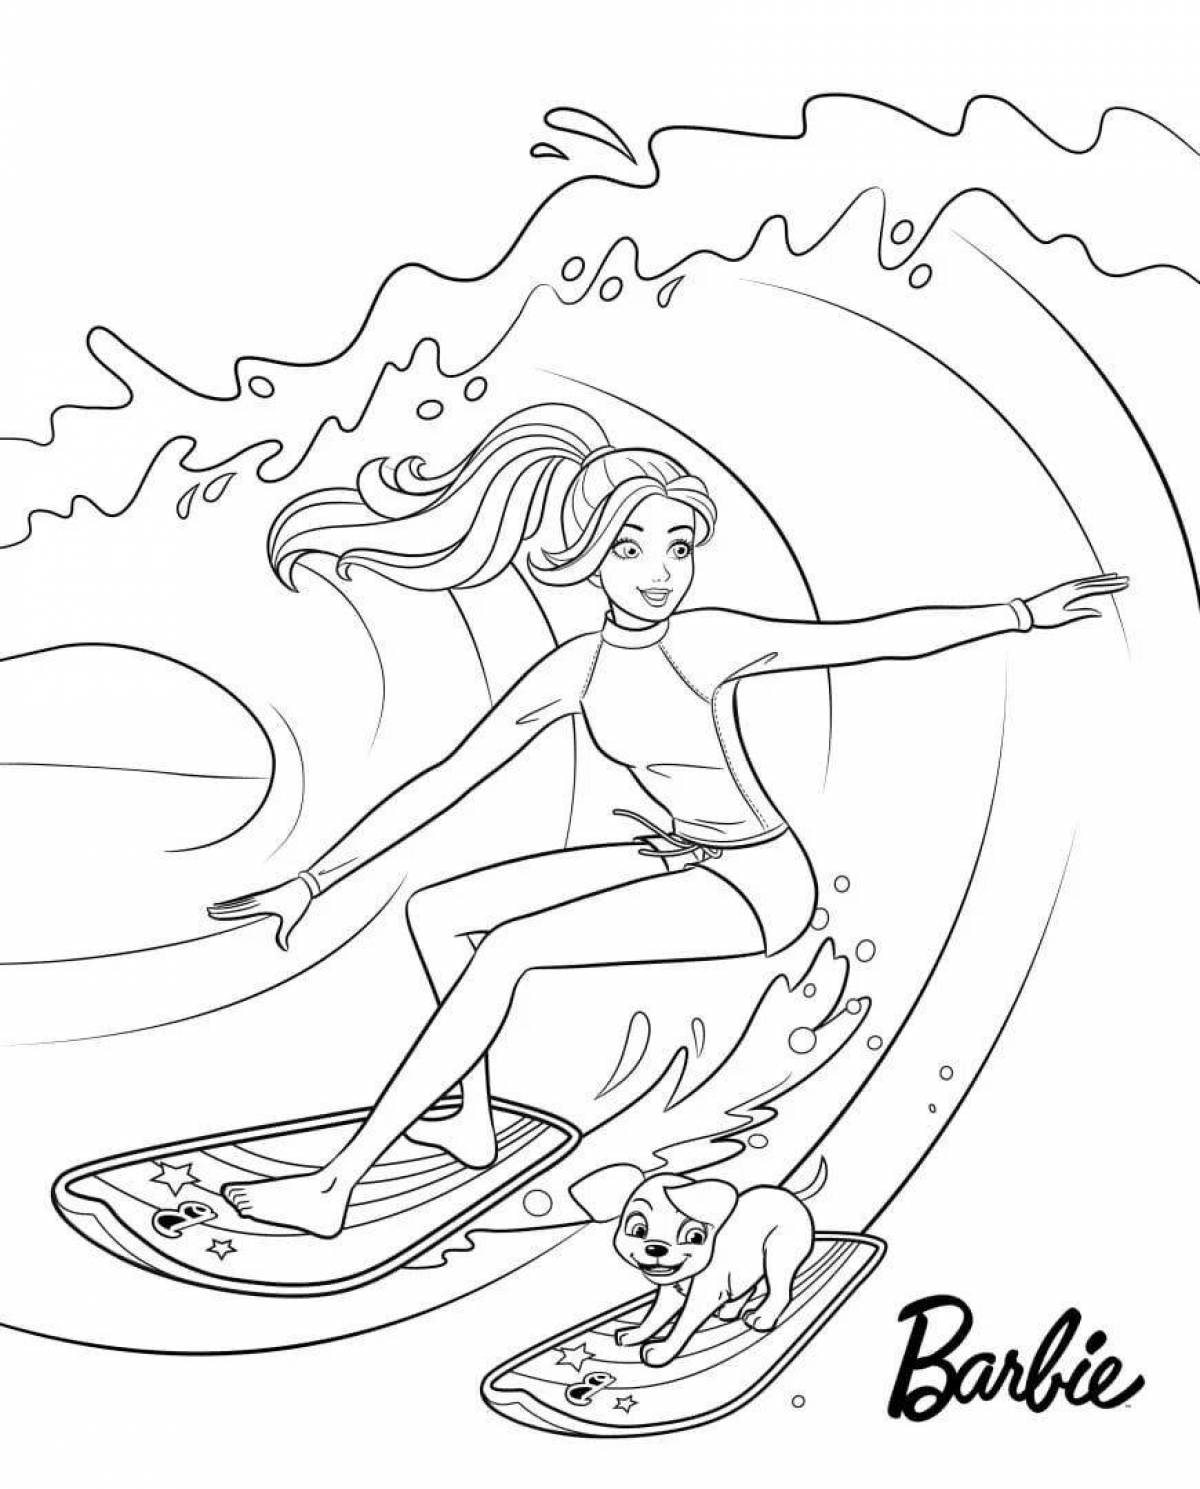 A cheerful girl on a skateboard